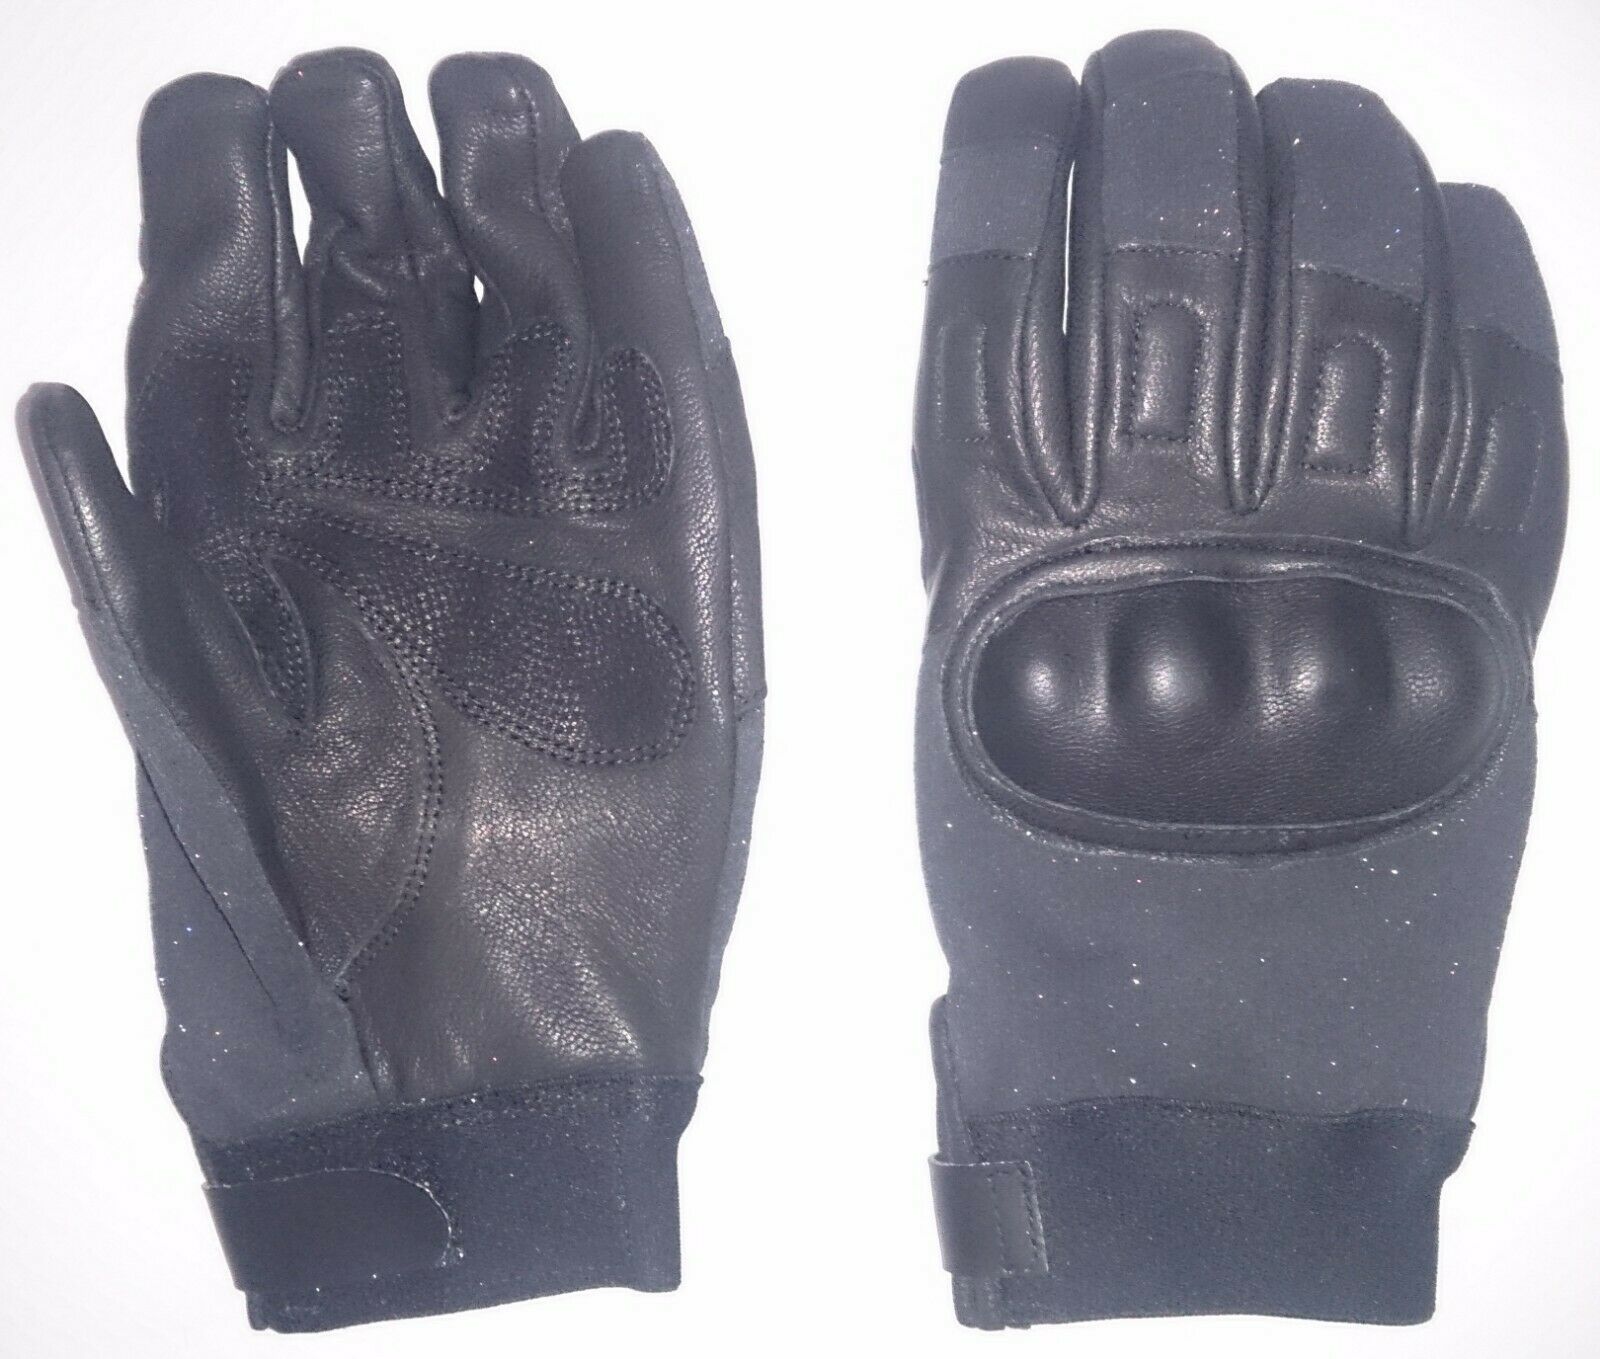 Paire de gants militaire en cuir armée Fr Taille 9.0 neuf